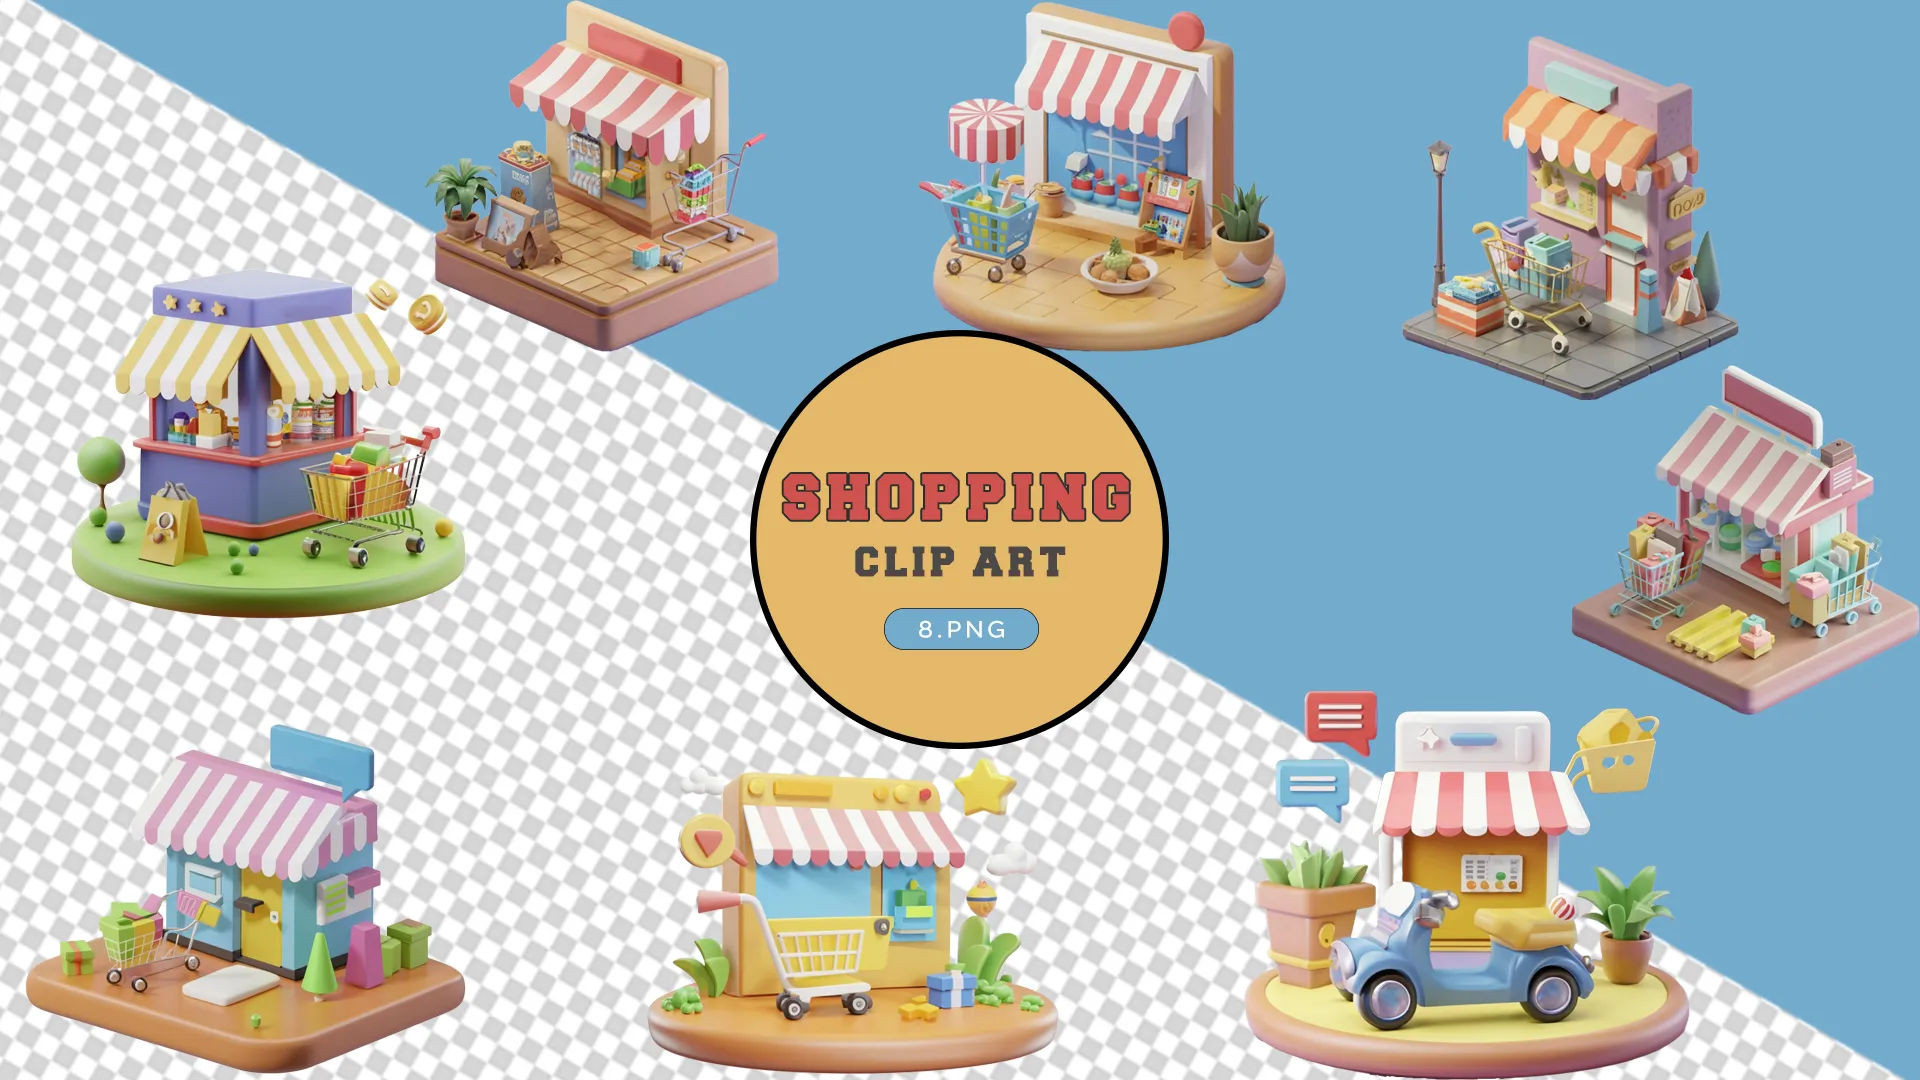 Boutique Shops 3D Pack for Retail Design image